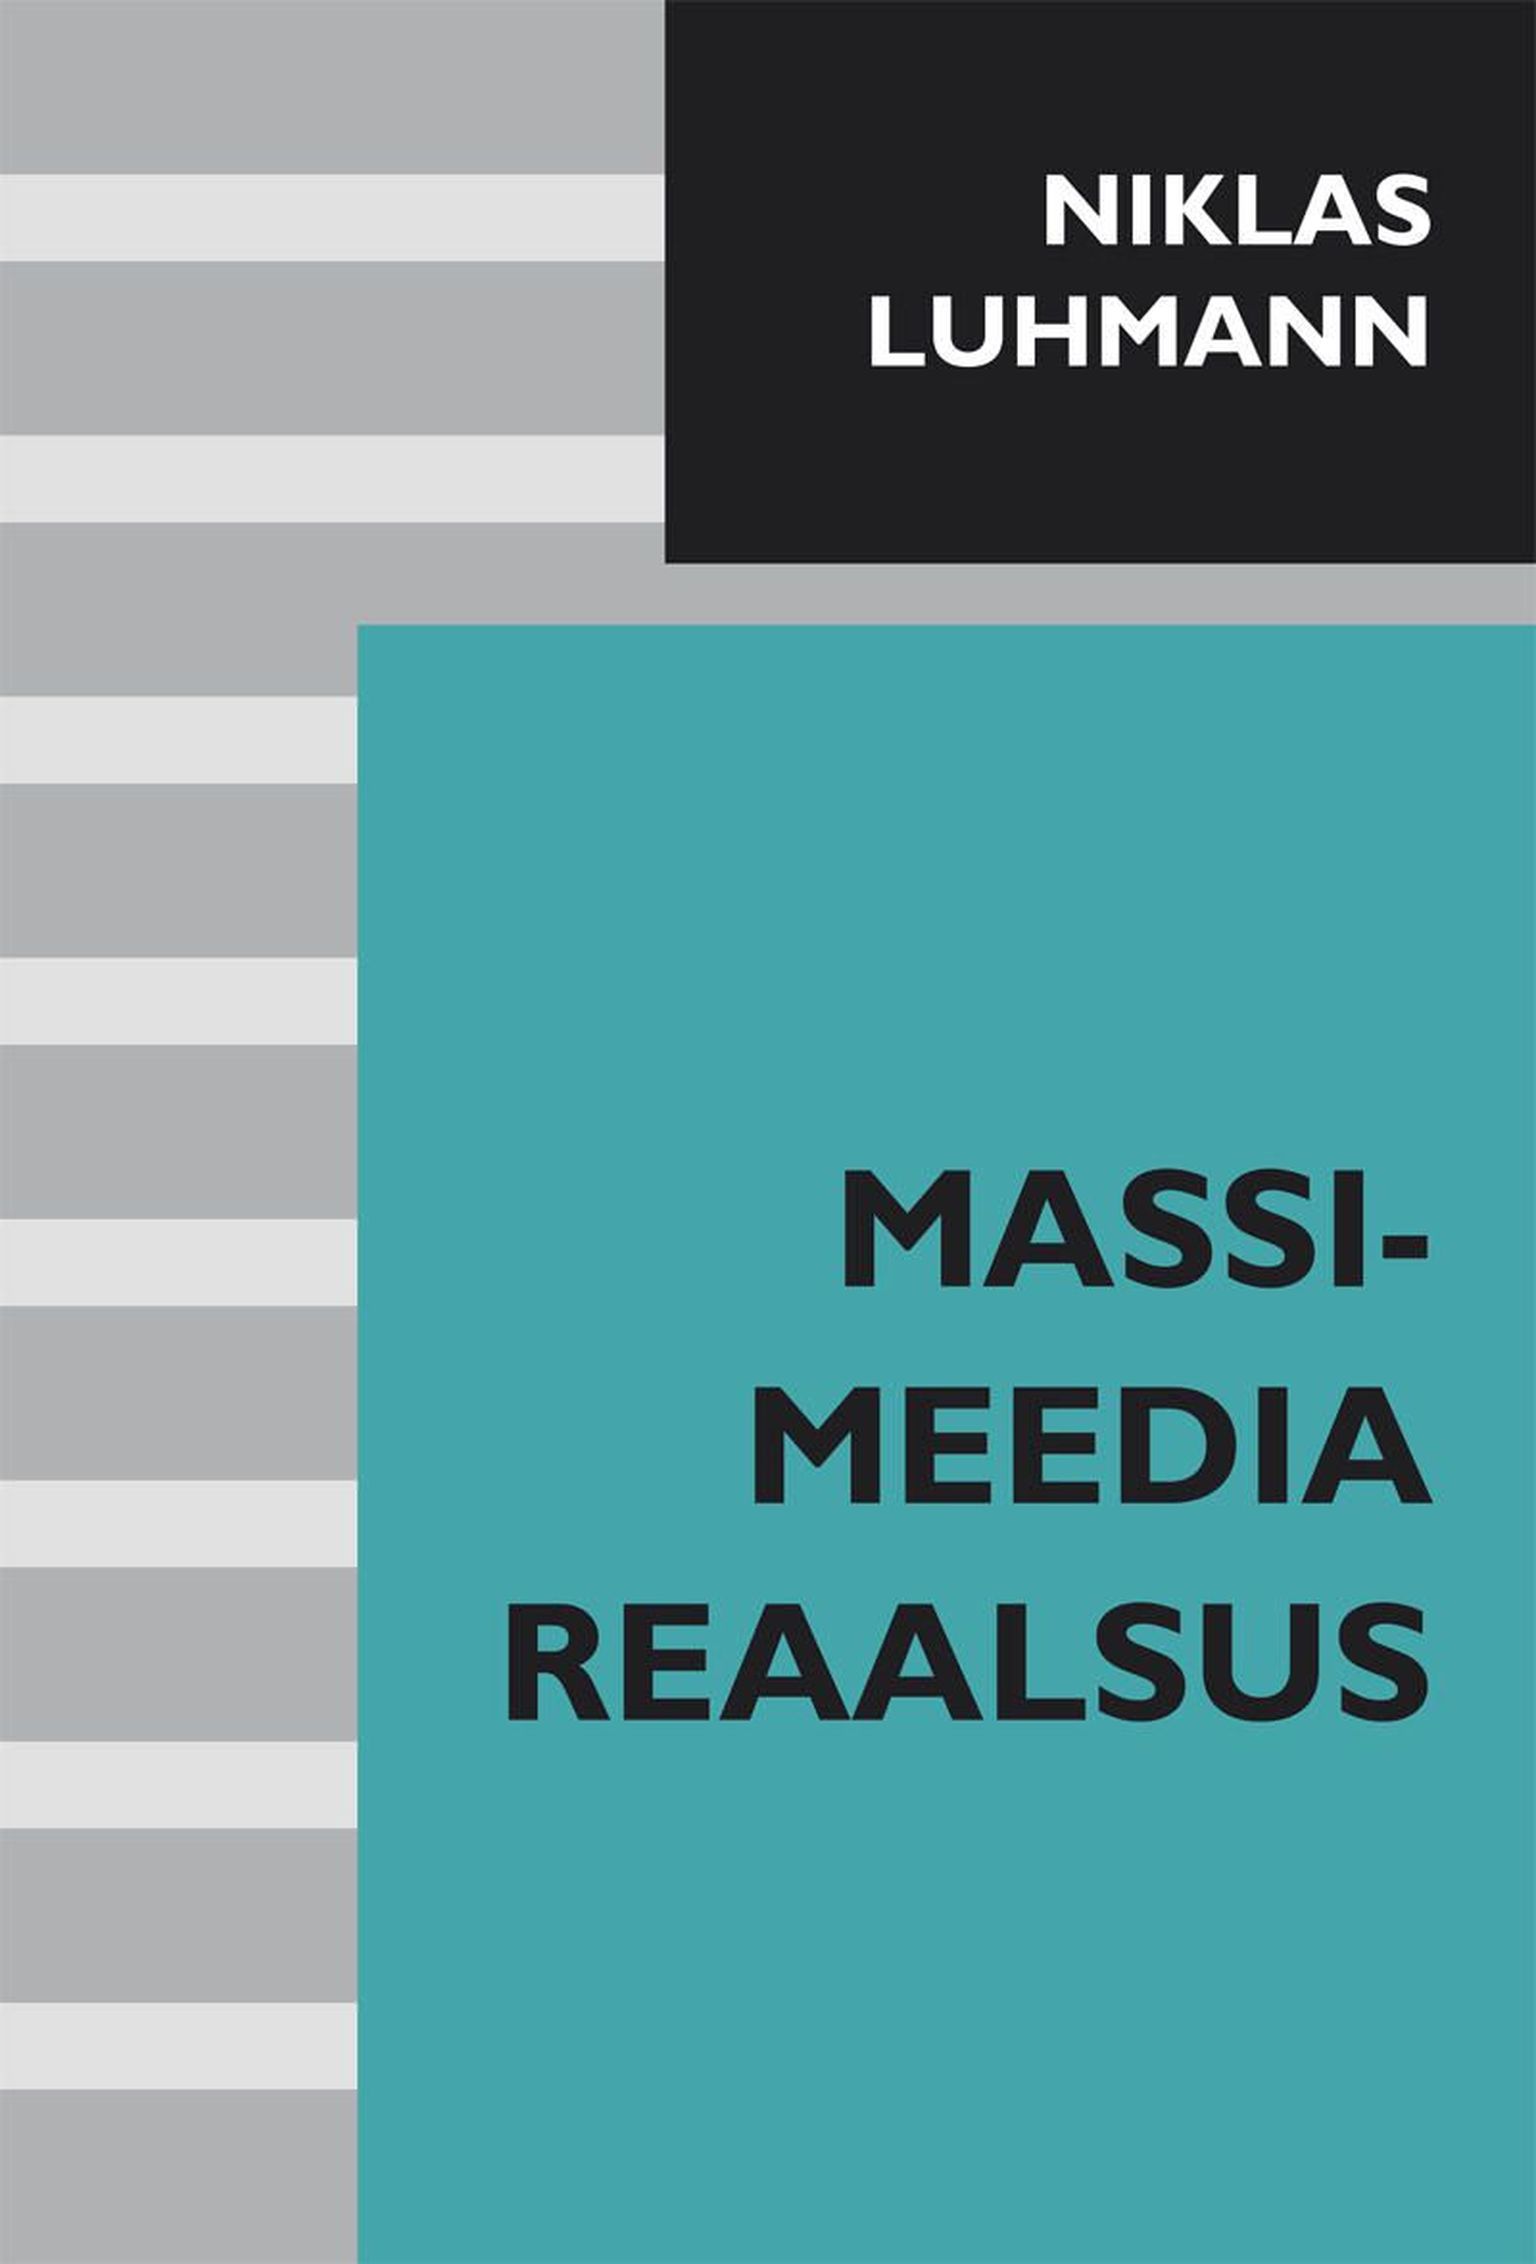 Niklas Luhmann «Massimeedia reaalsus».